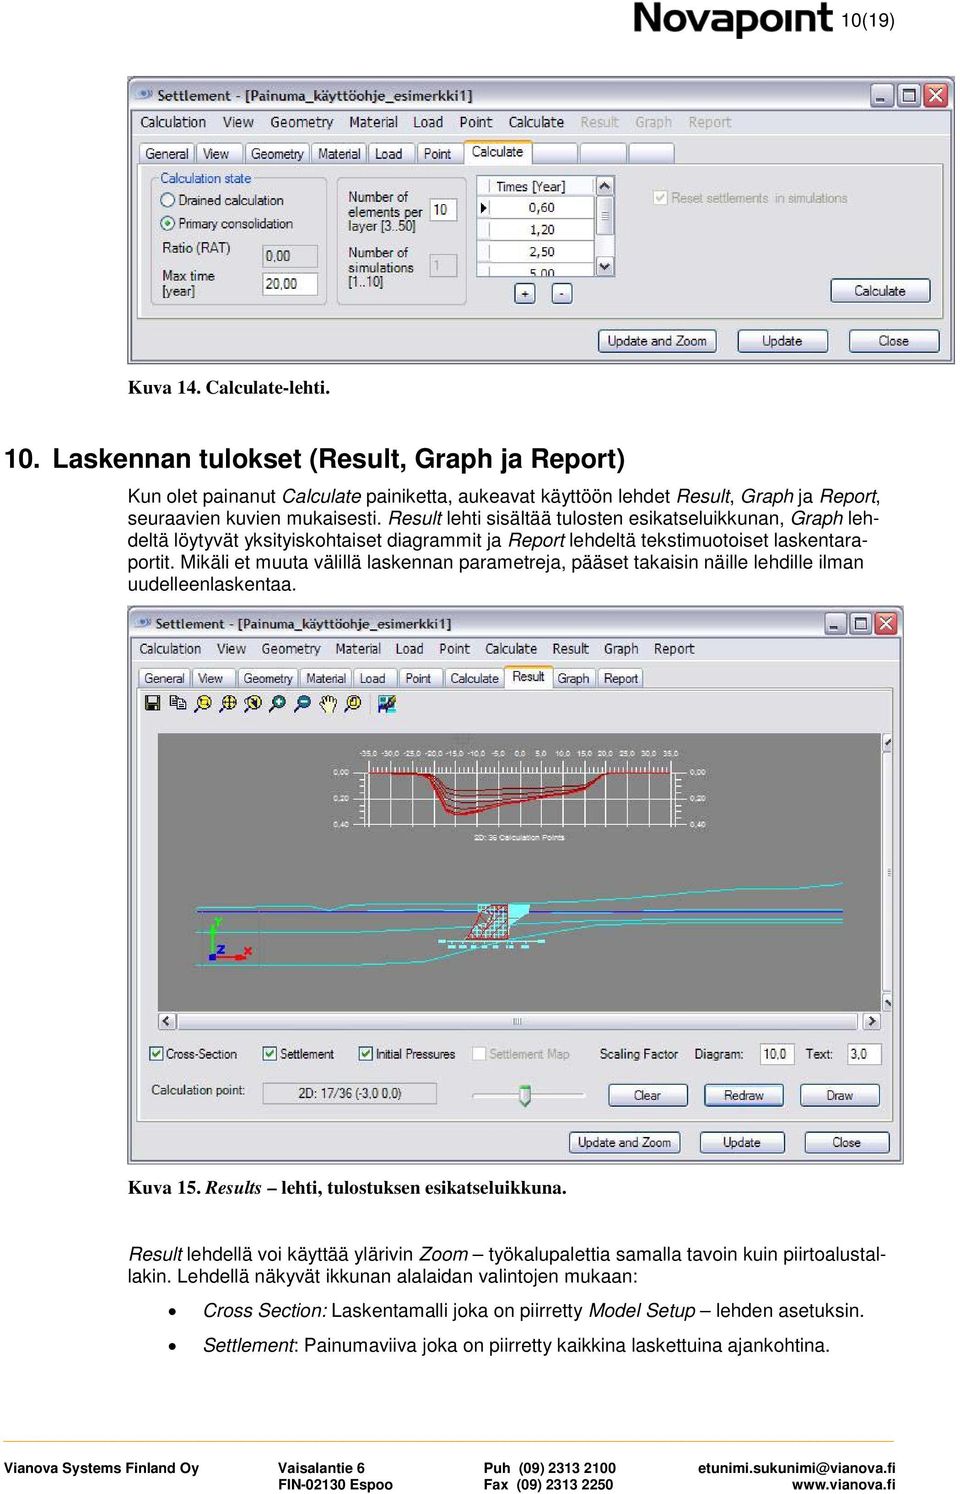 Result lehti sisältää tulosten esikatseluikkunan, Graph lehdeltä löytyvät yksityiskohtaiset diagrammit ja Report lehdeltä tekstimuotoiset laskentaraportit.